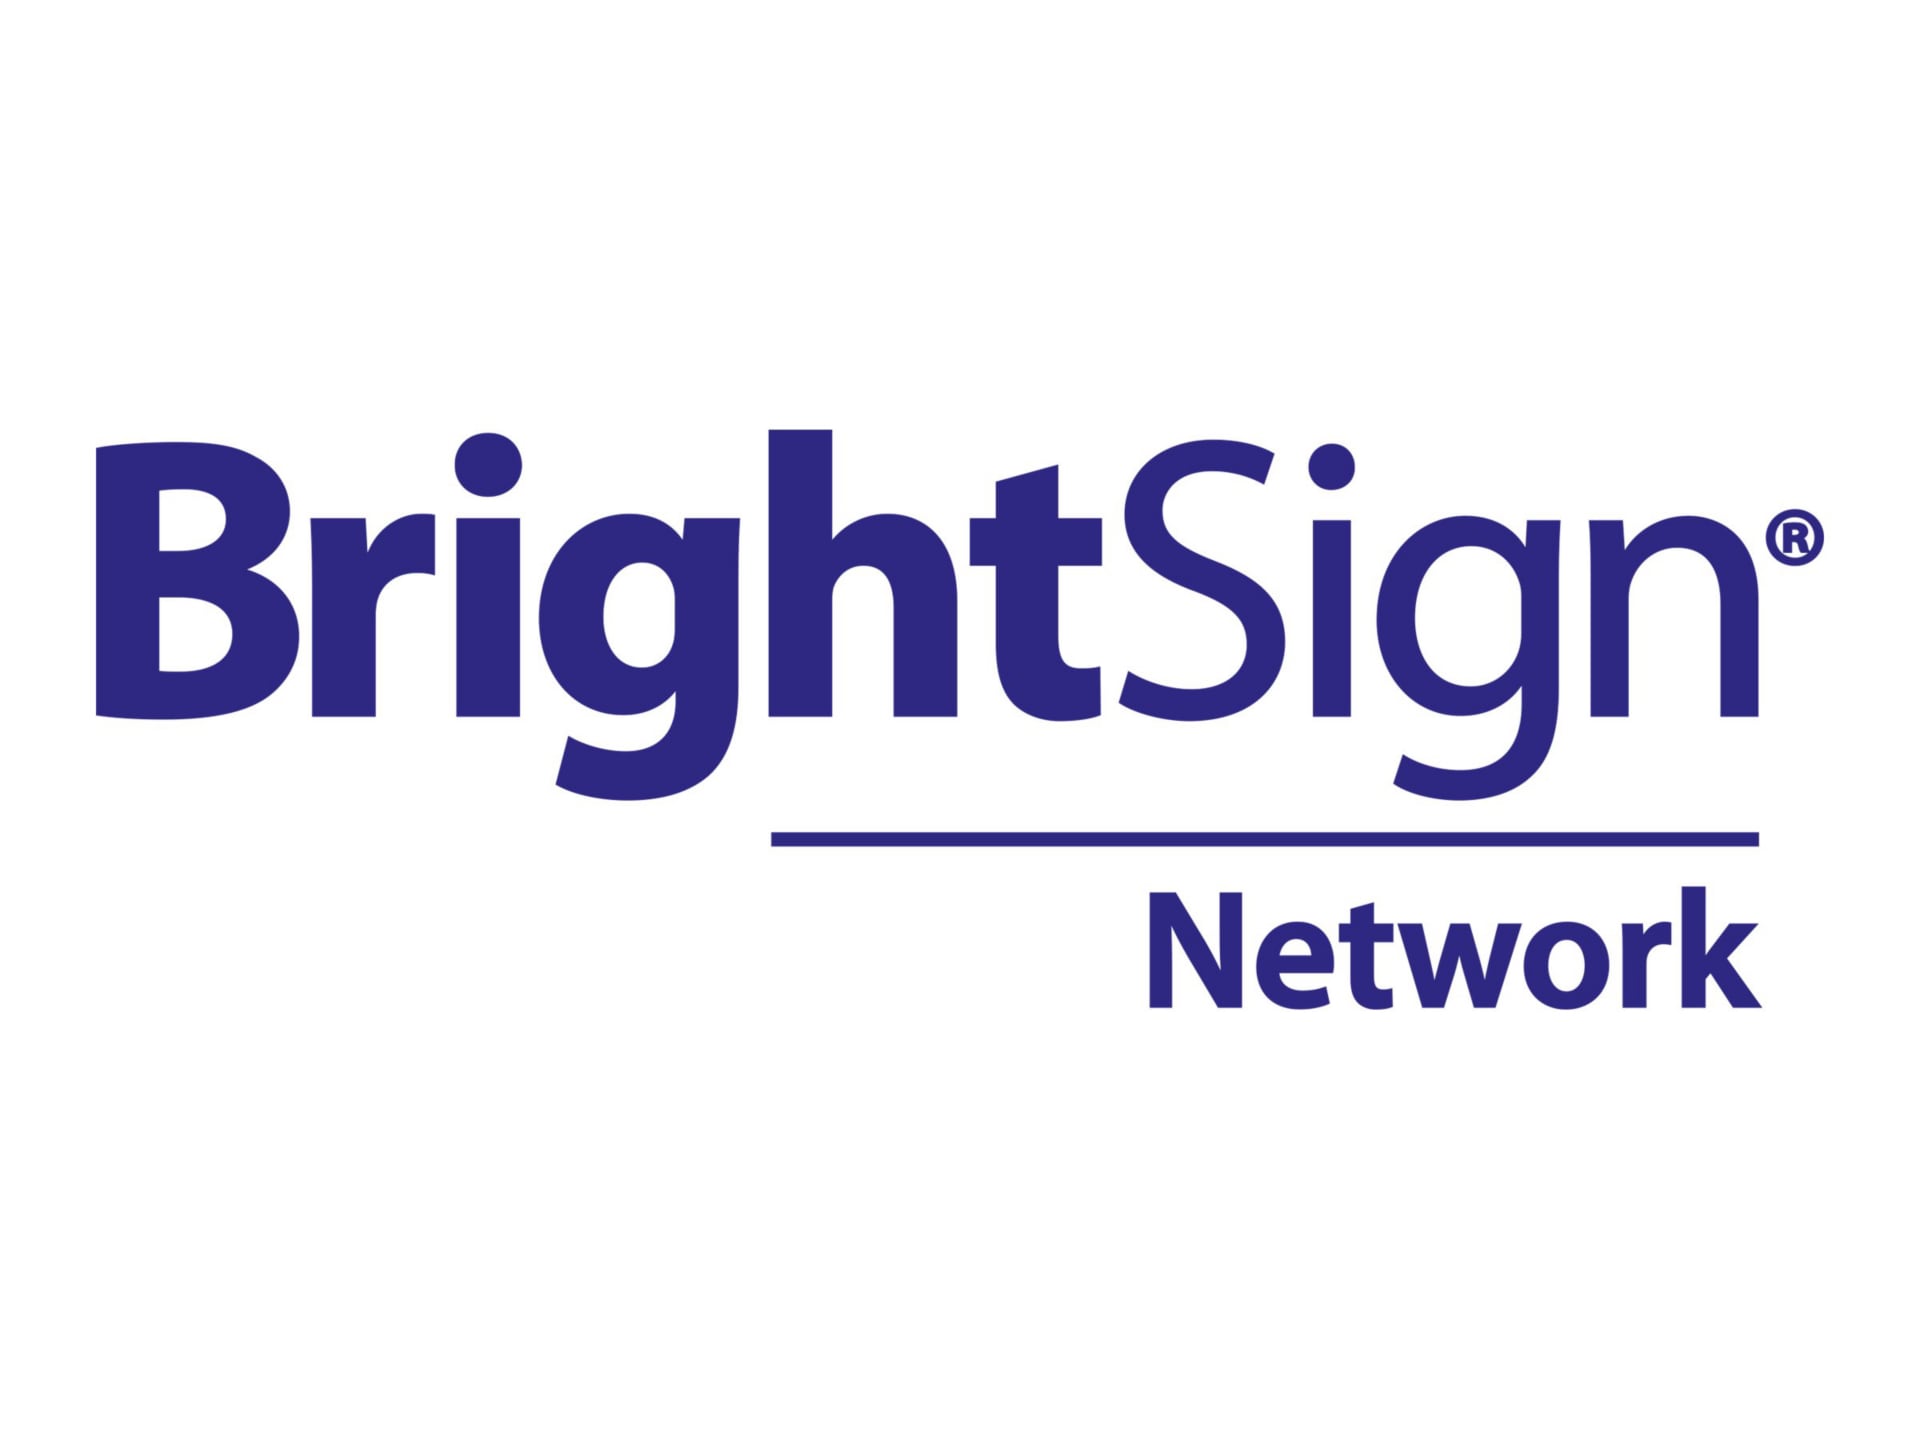 BrightSign Network - Pass license (1 year) - 1 player